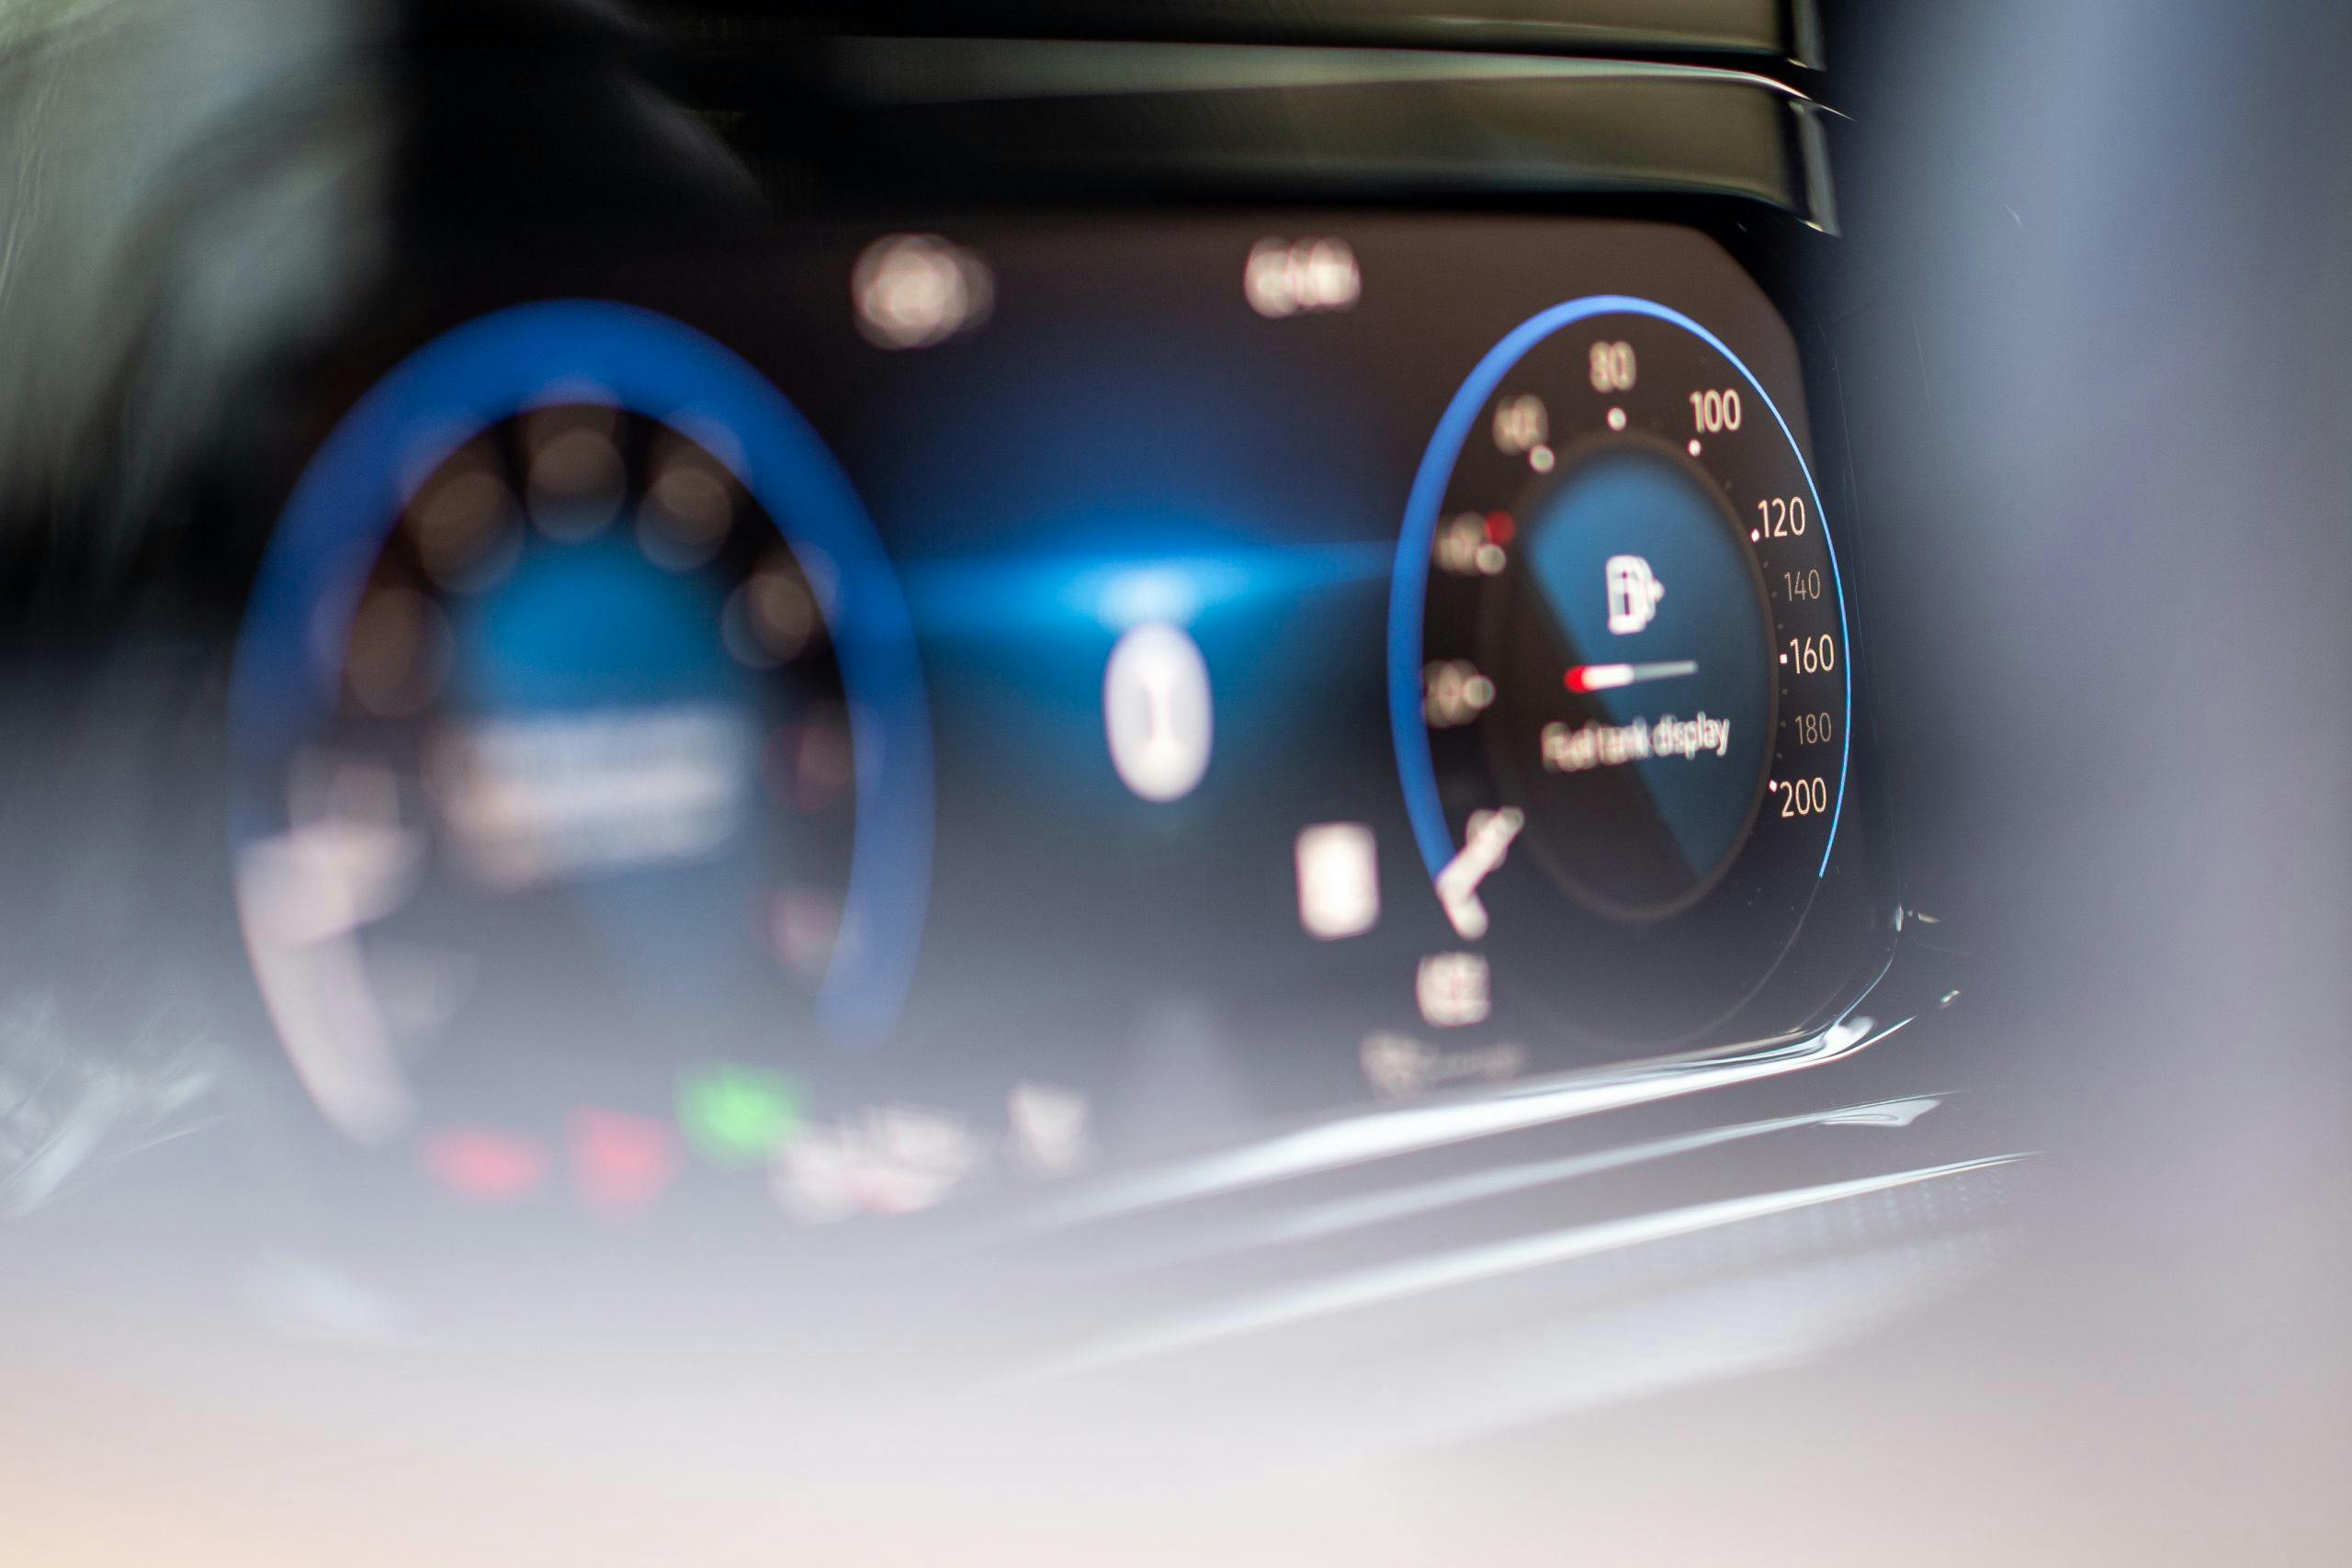 VW Golf R interior digital dash